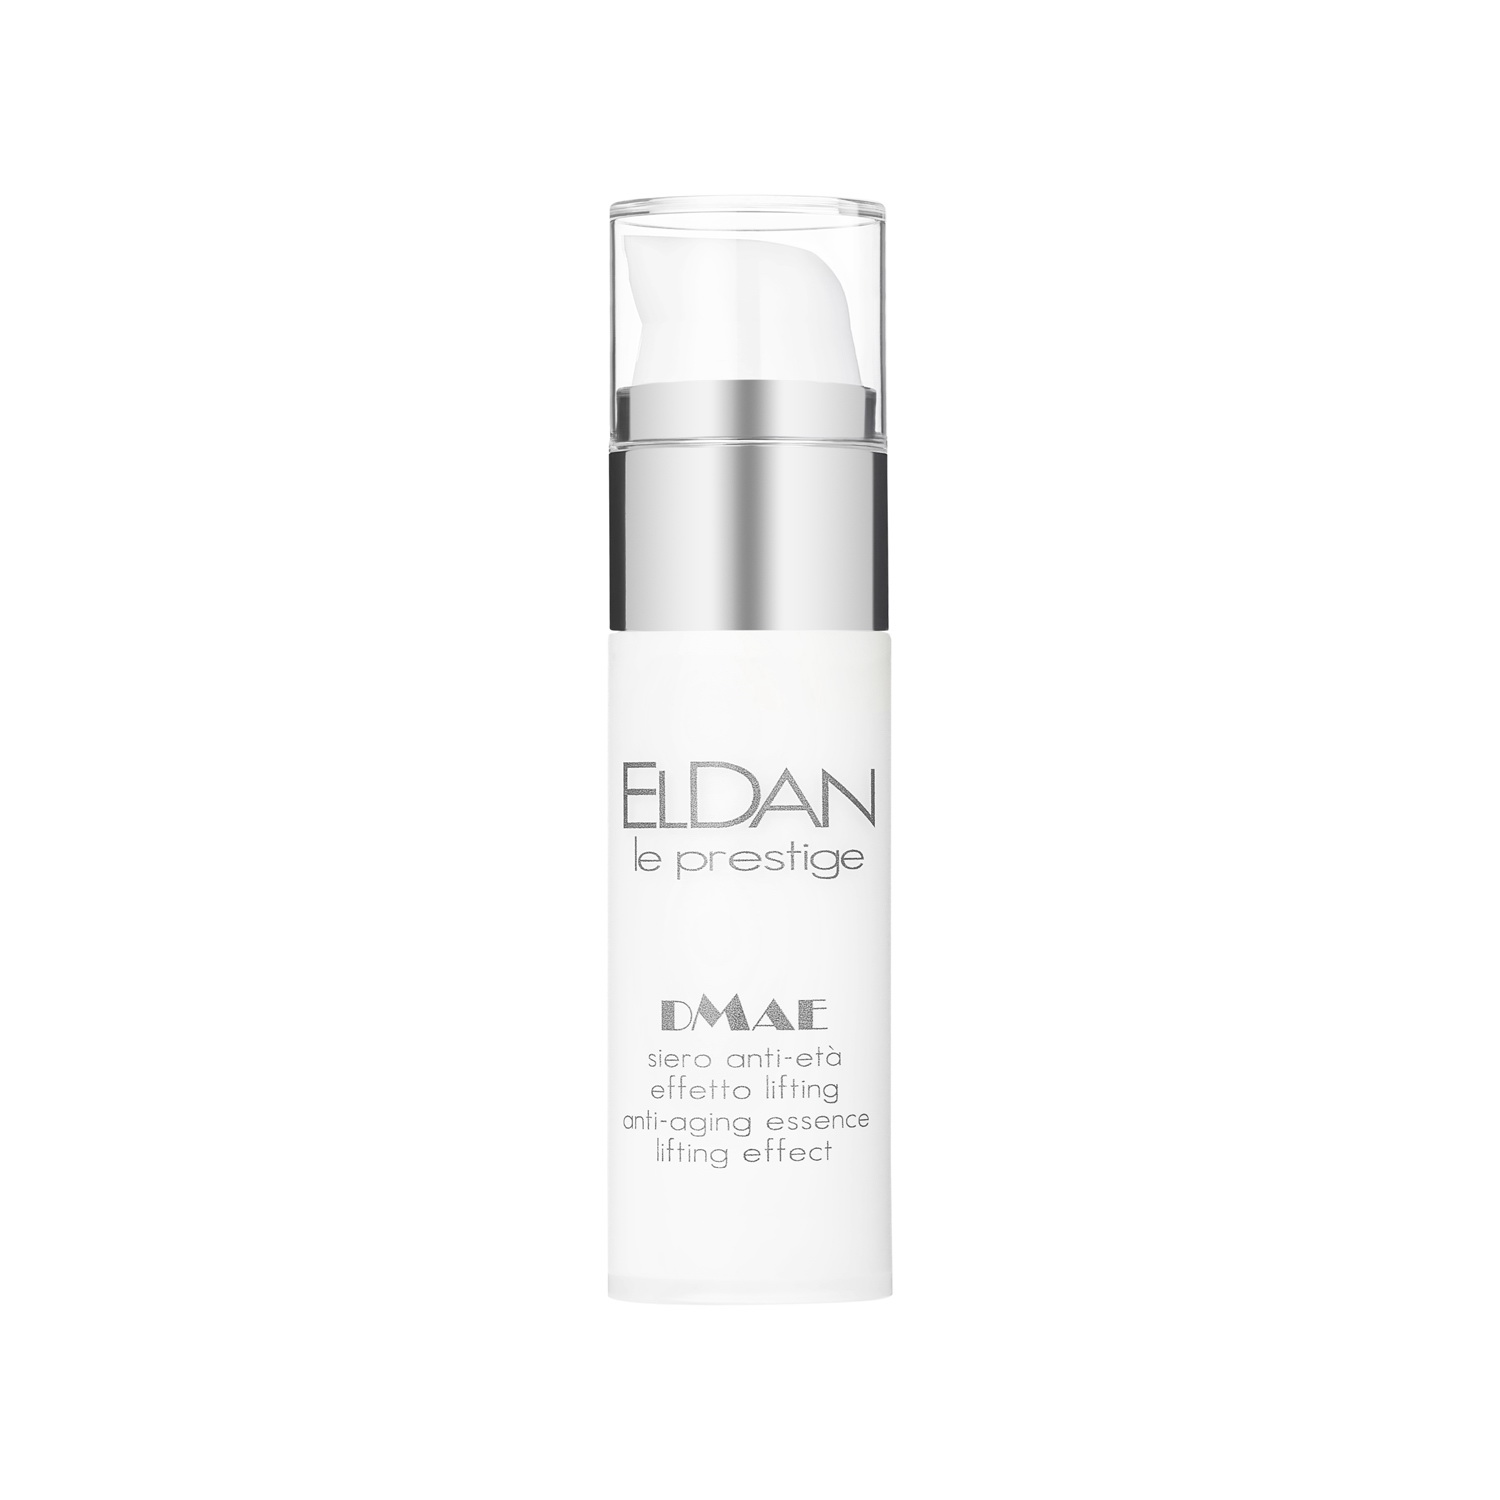 Сыворотка для лица Eldan Cosmetics DMAE Anti-Aging Essence Lifting Effect, 30 мл inspira cosmetics разглаживающая морщины и устраняющая сухость сыворотка 30 мл